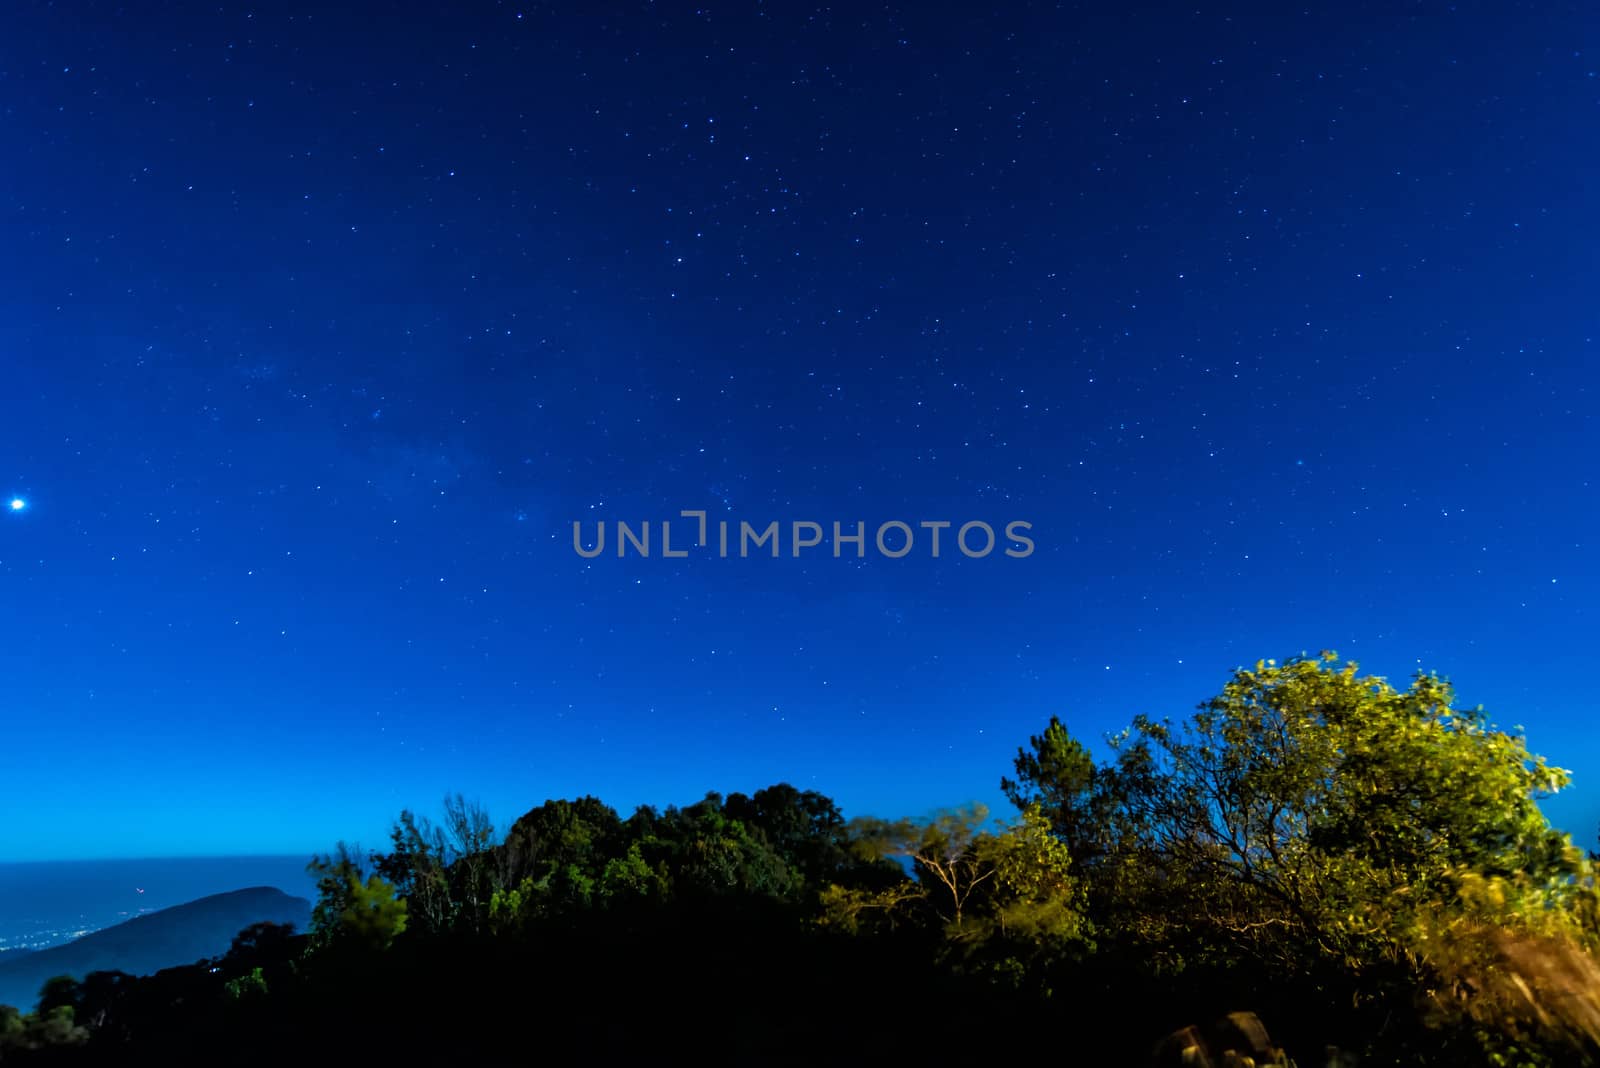 Star in blue sky night time scene by moggara12